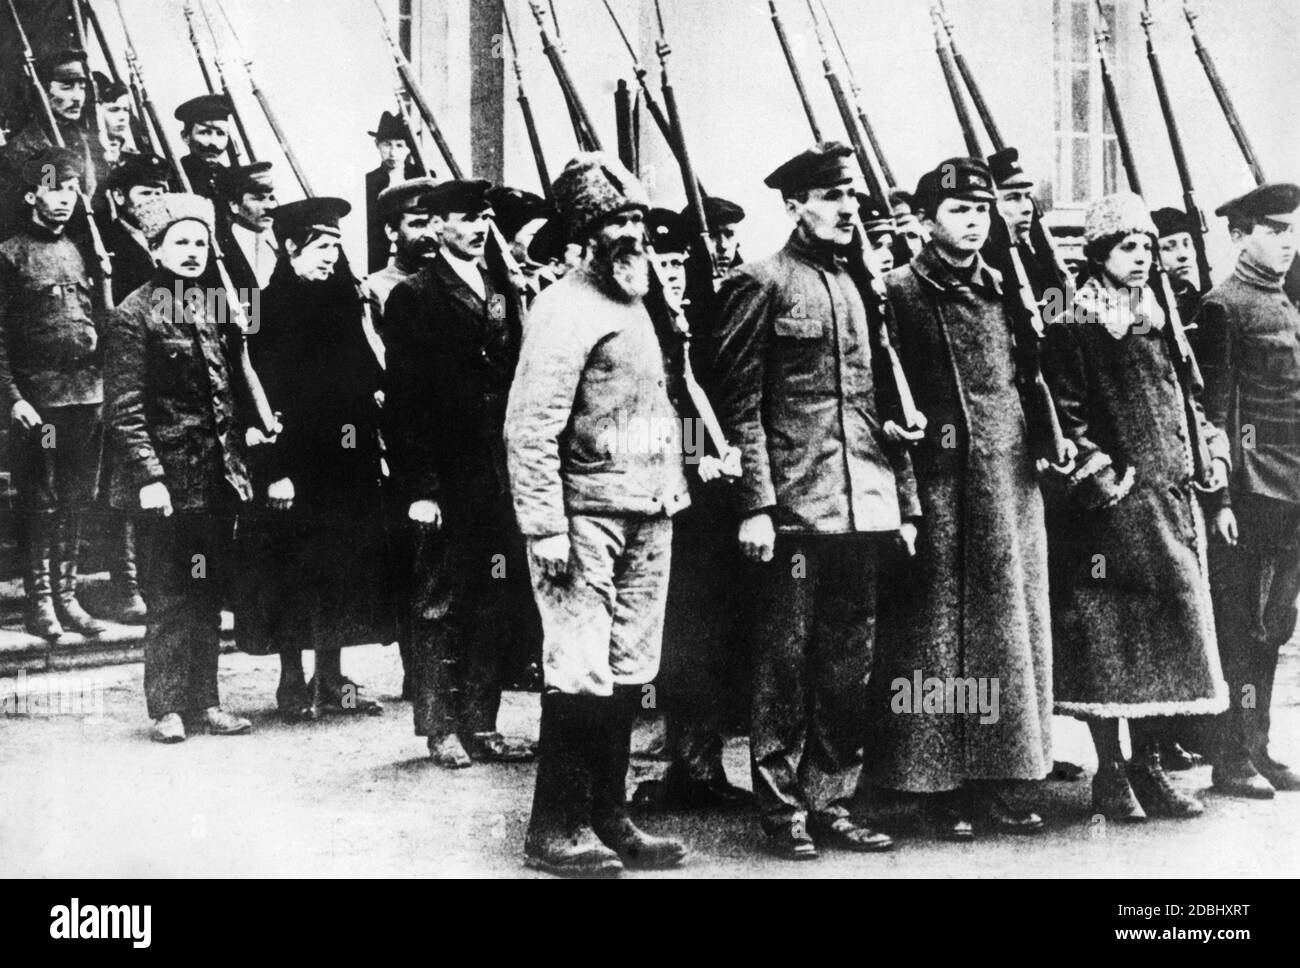 Die Rote Armee unter Trotzki schaffte es, sich gegen die weißrussischen Armeen und ausländischen Interventionen zu stellen, obwohl sie hauptsächlich aus Freiwilligen bestand. Viele Bauern, Arbeiter und Frauen schlossen sich der Roten Armee an. Hier ist ein Foto von Freiwilligen während ihrer Ausbildung. Stockfoto